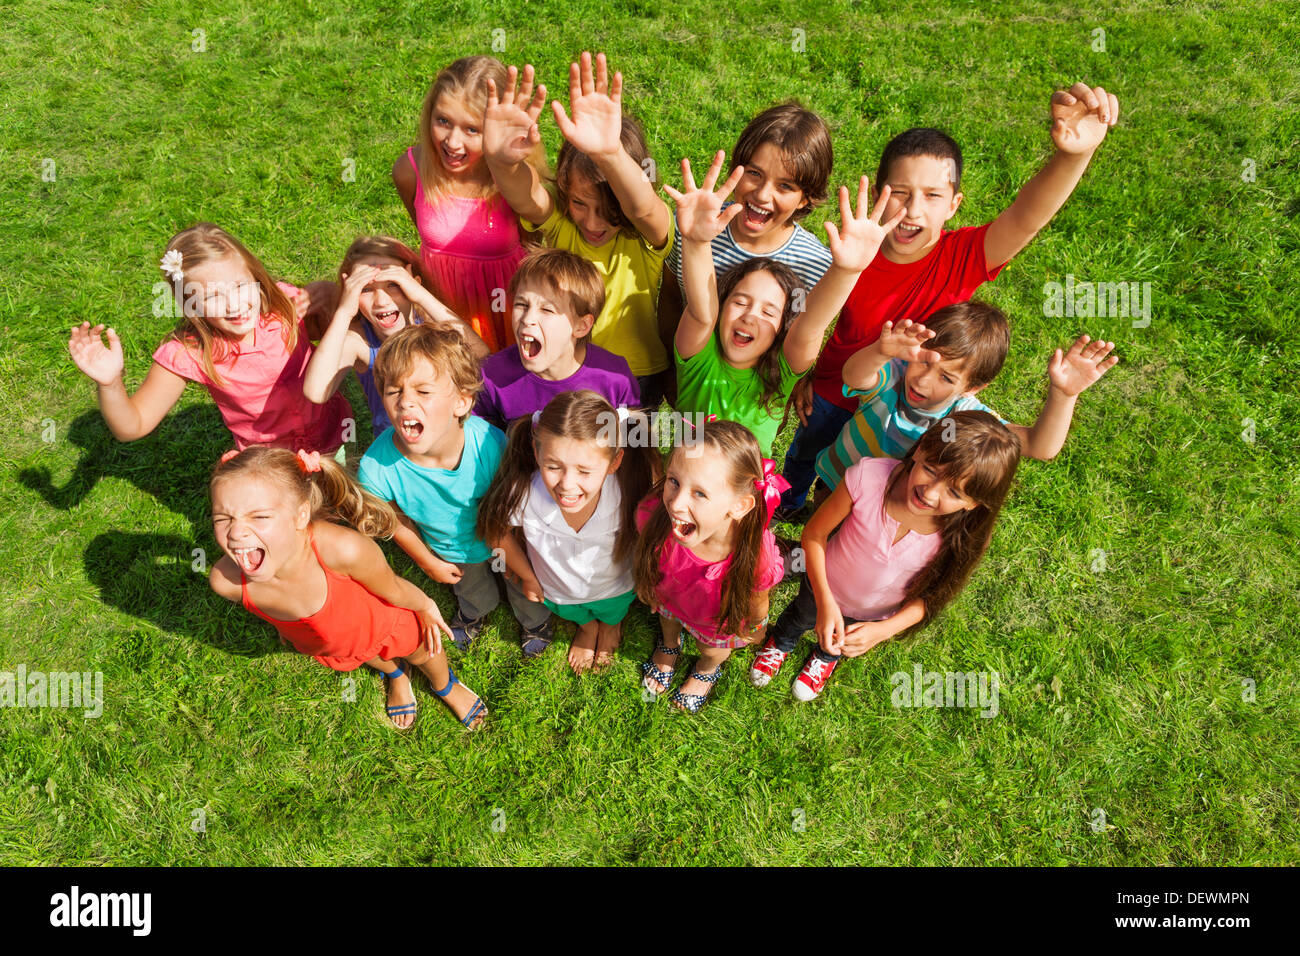 Große Gruppe von Kindern, jungen und Mädchen, ca. 10 Jahre alt, steht auf den grünen Rasen-Draufsicht Stockfoto